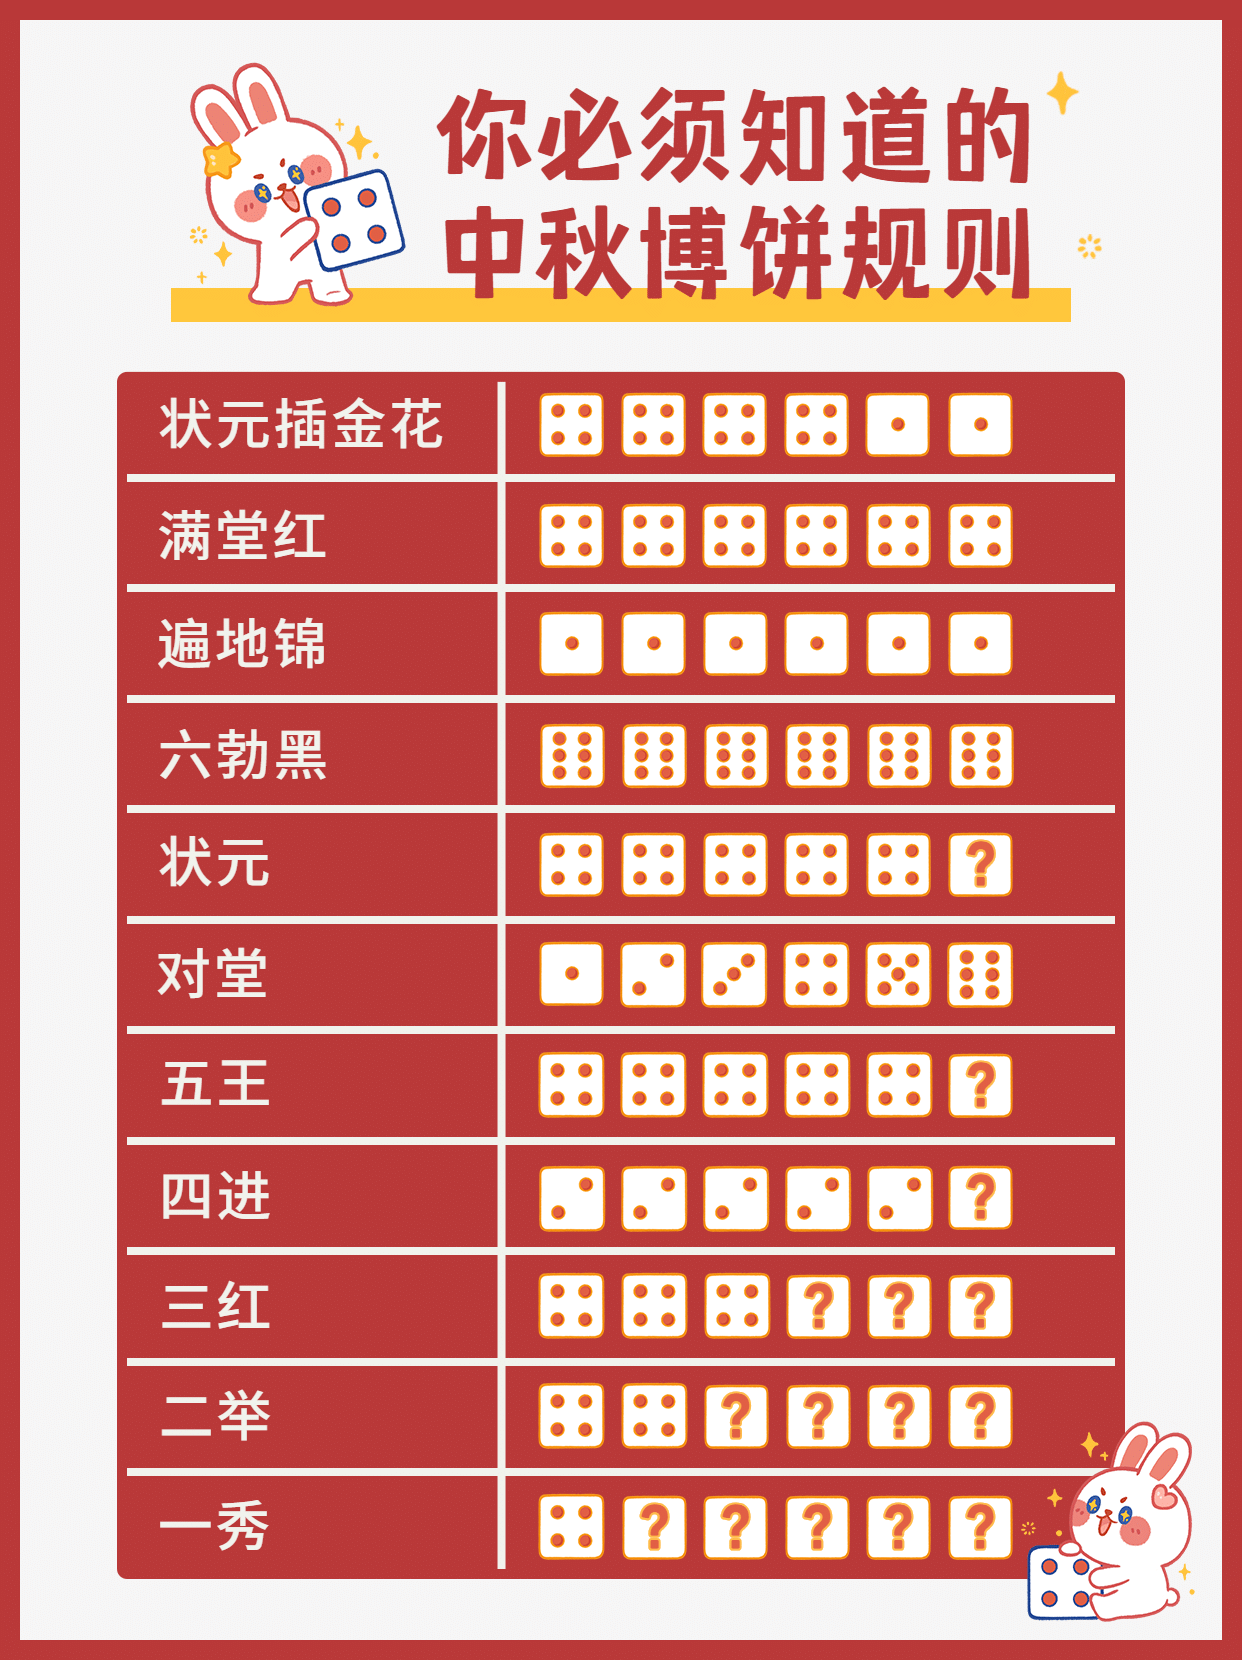 中秋节博饼活动规则小红书封面配图